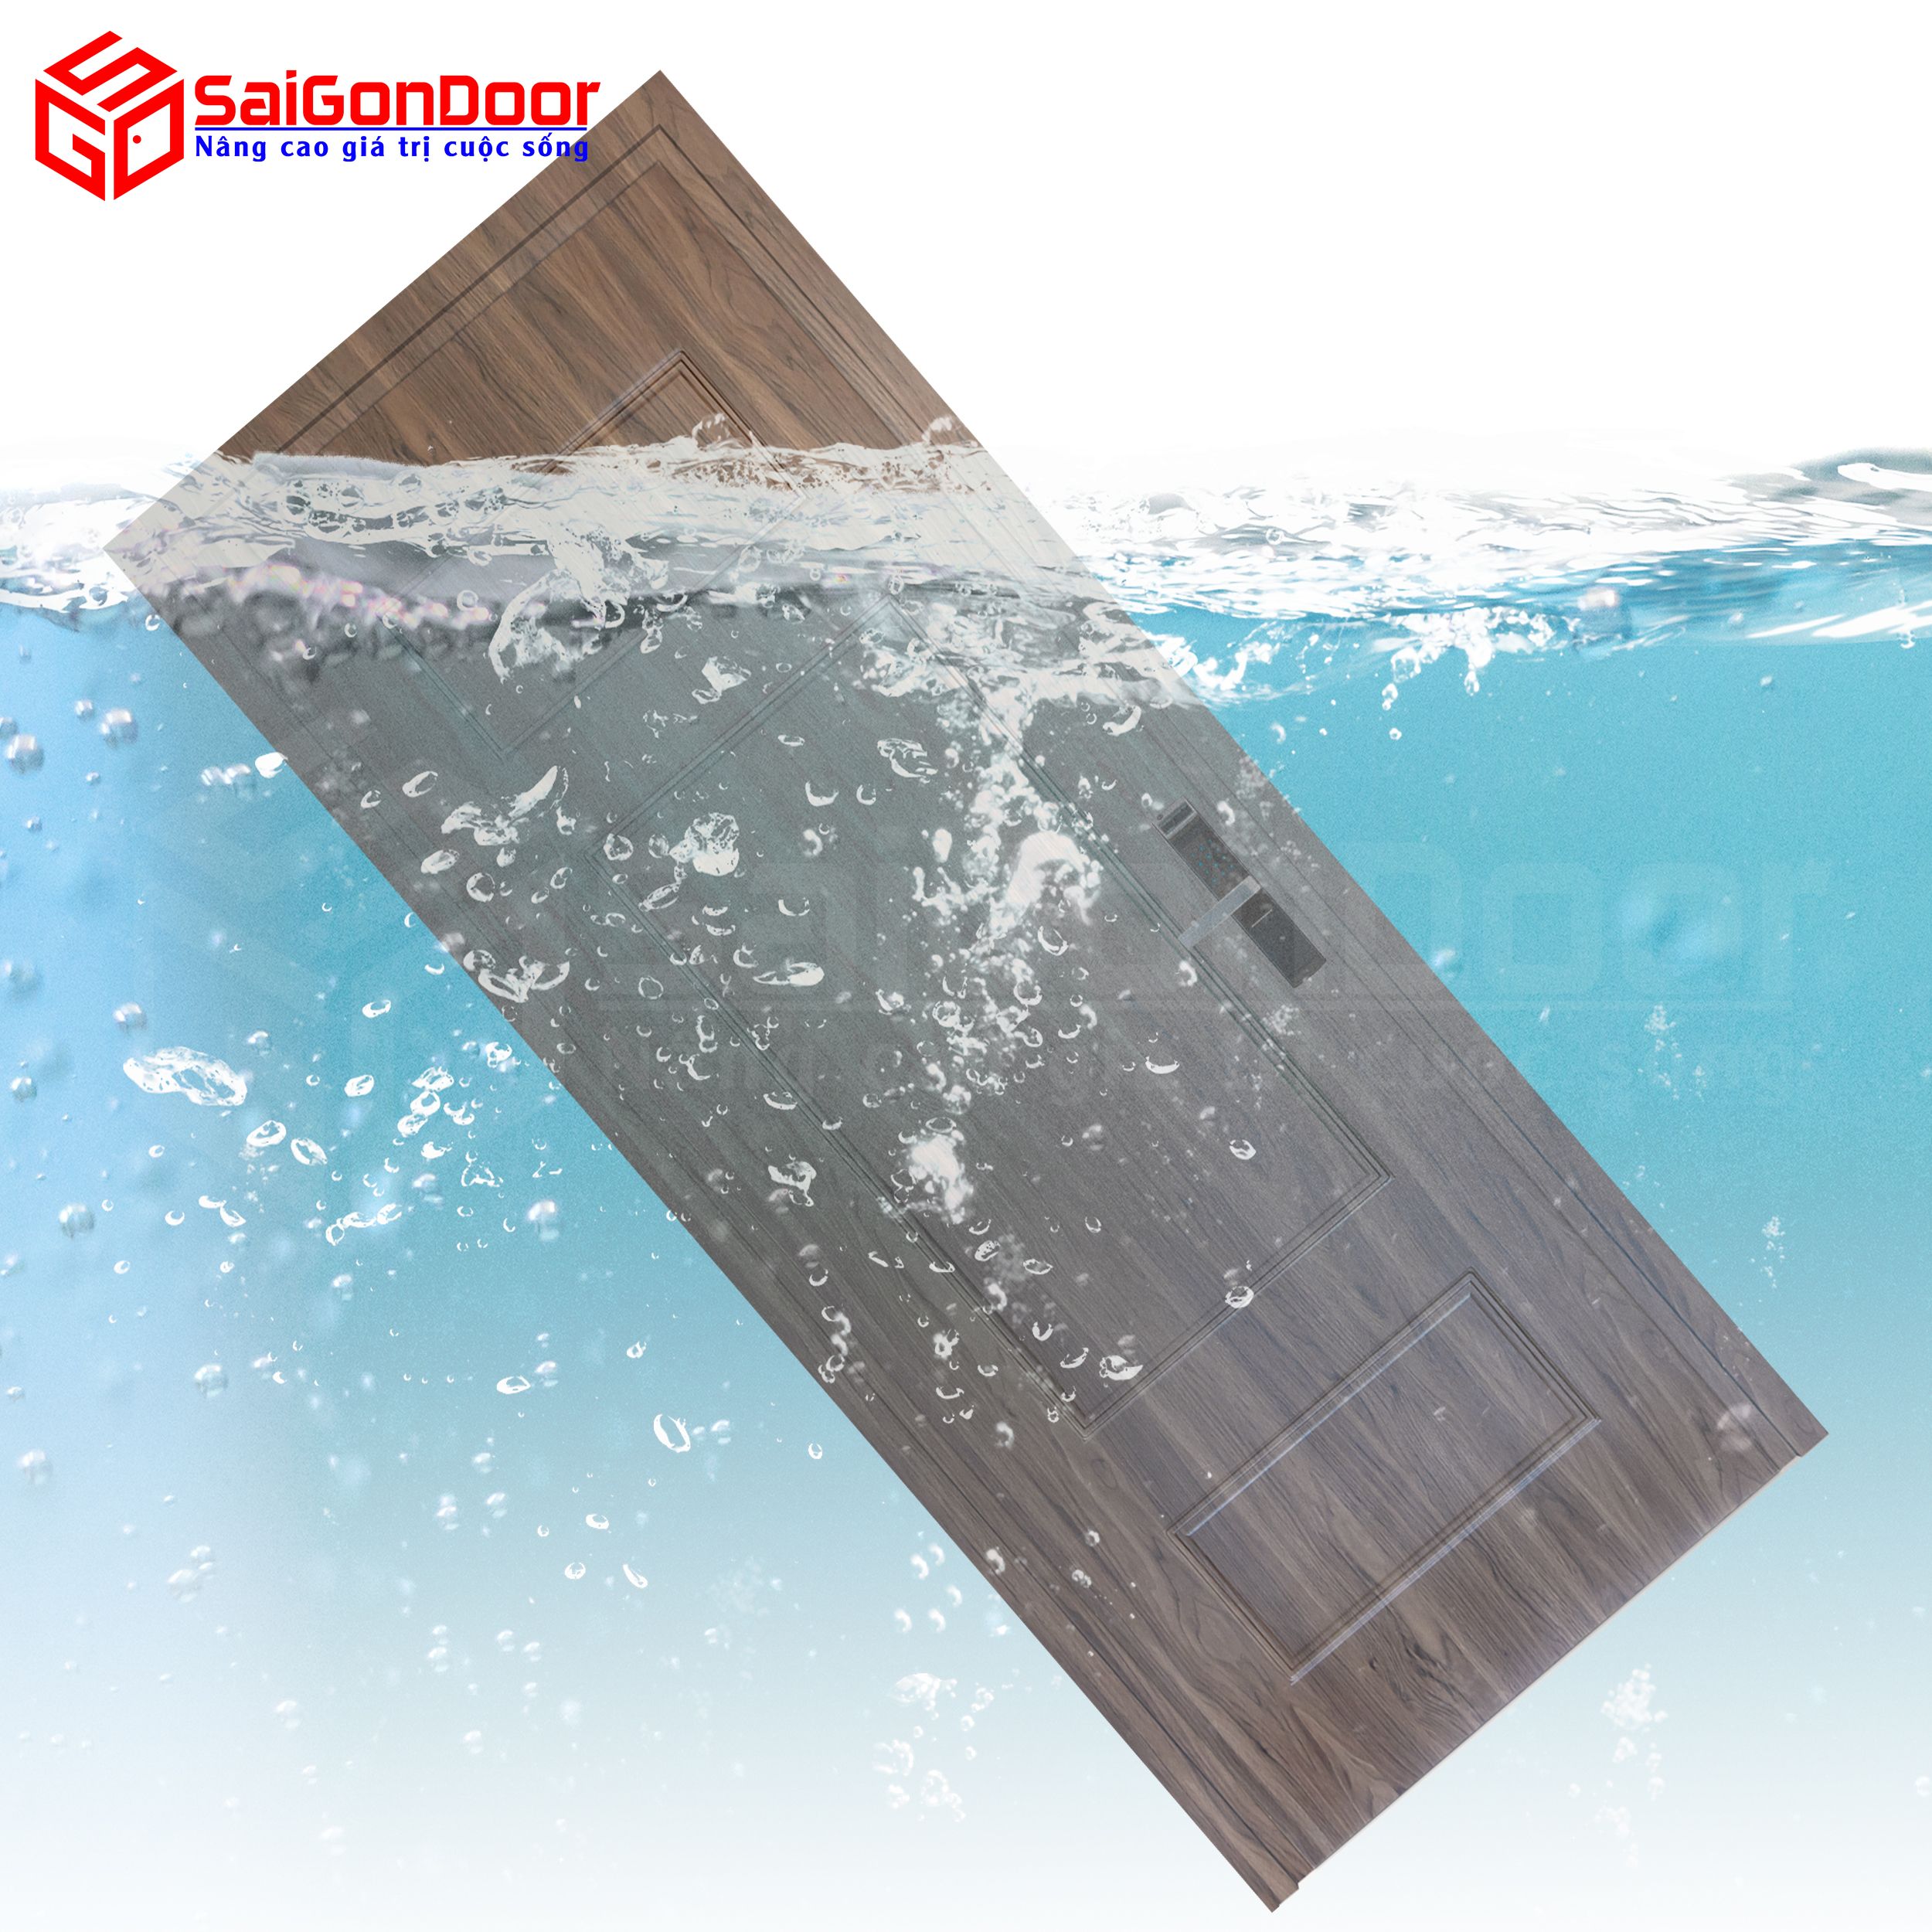 Cửa nhựa gỗ Composite chống nước hiệu quả thích hợp dùng làm cửa nhà vệ sinh hay nhà tắm